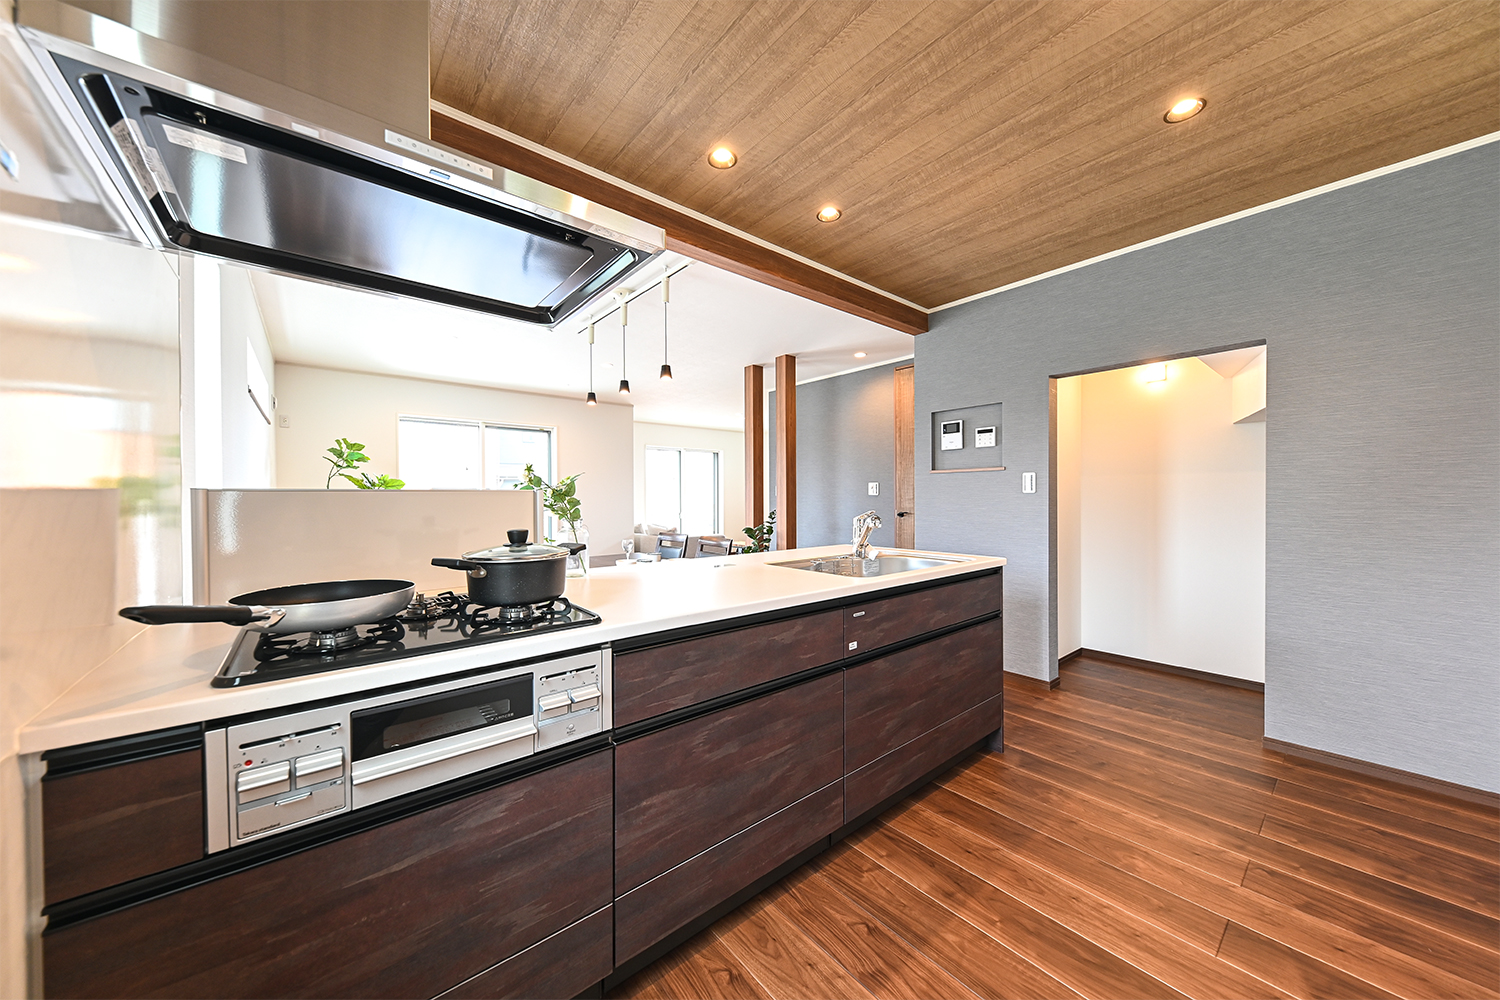 木目デザインがうつくしくシックな雰囲気に仕上がったキッチン